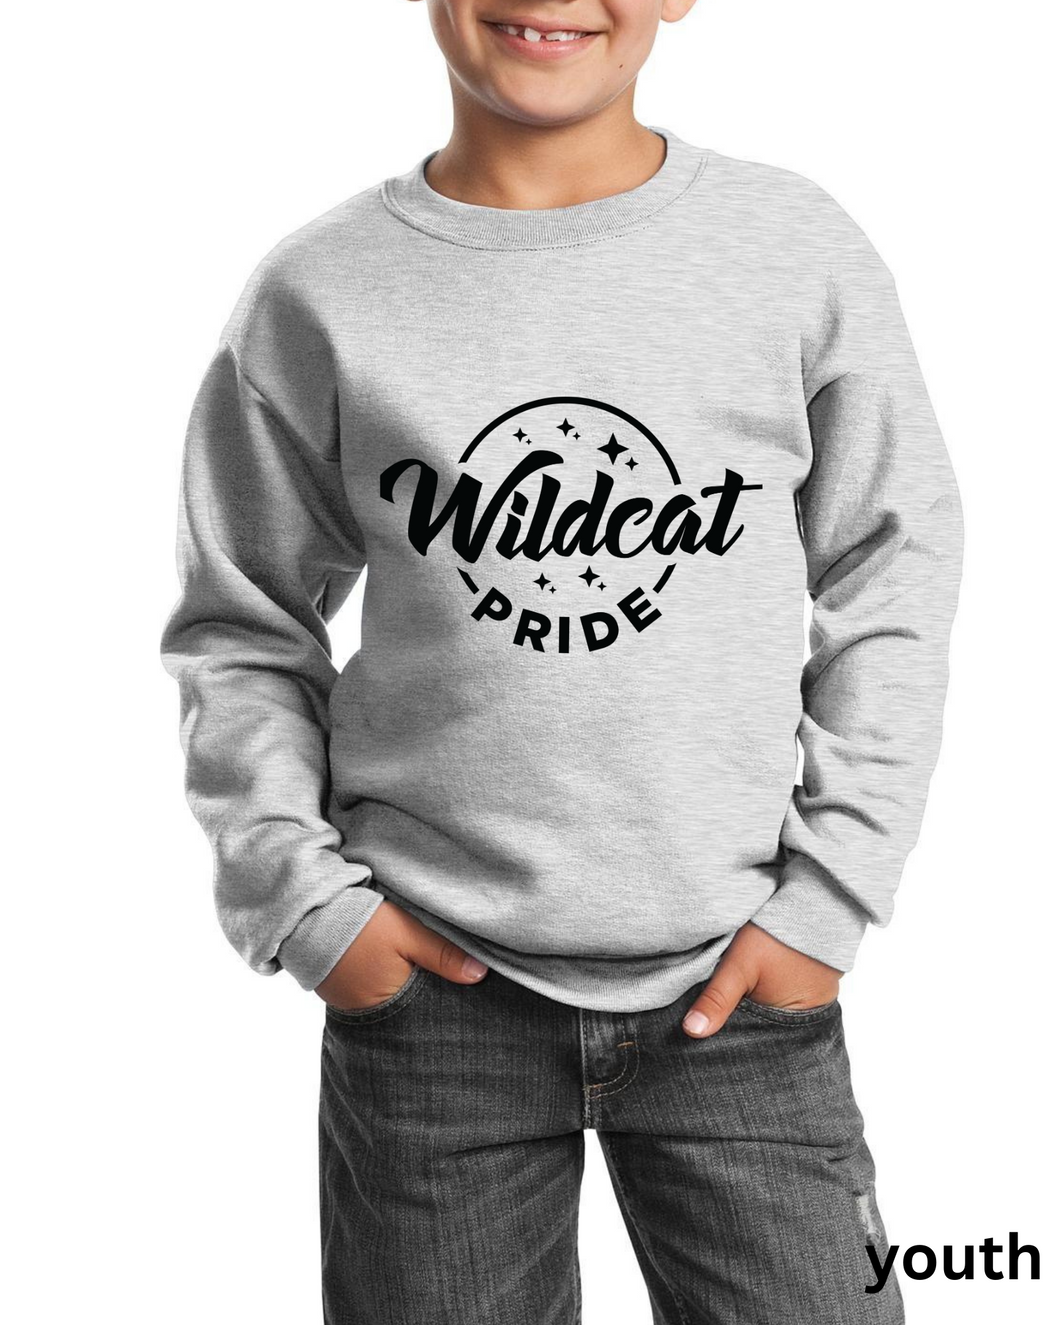 wildcat pride sweatshirt